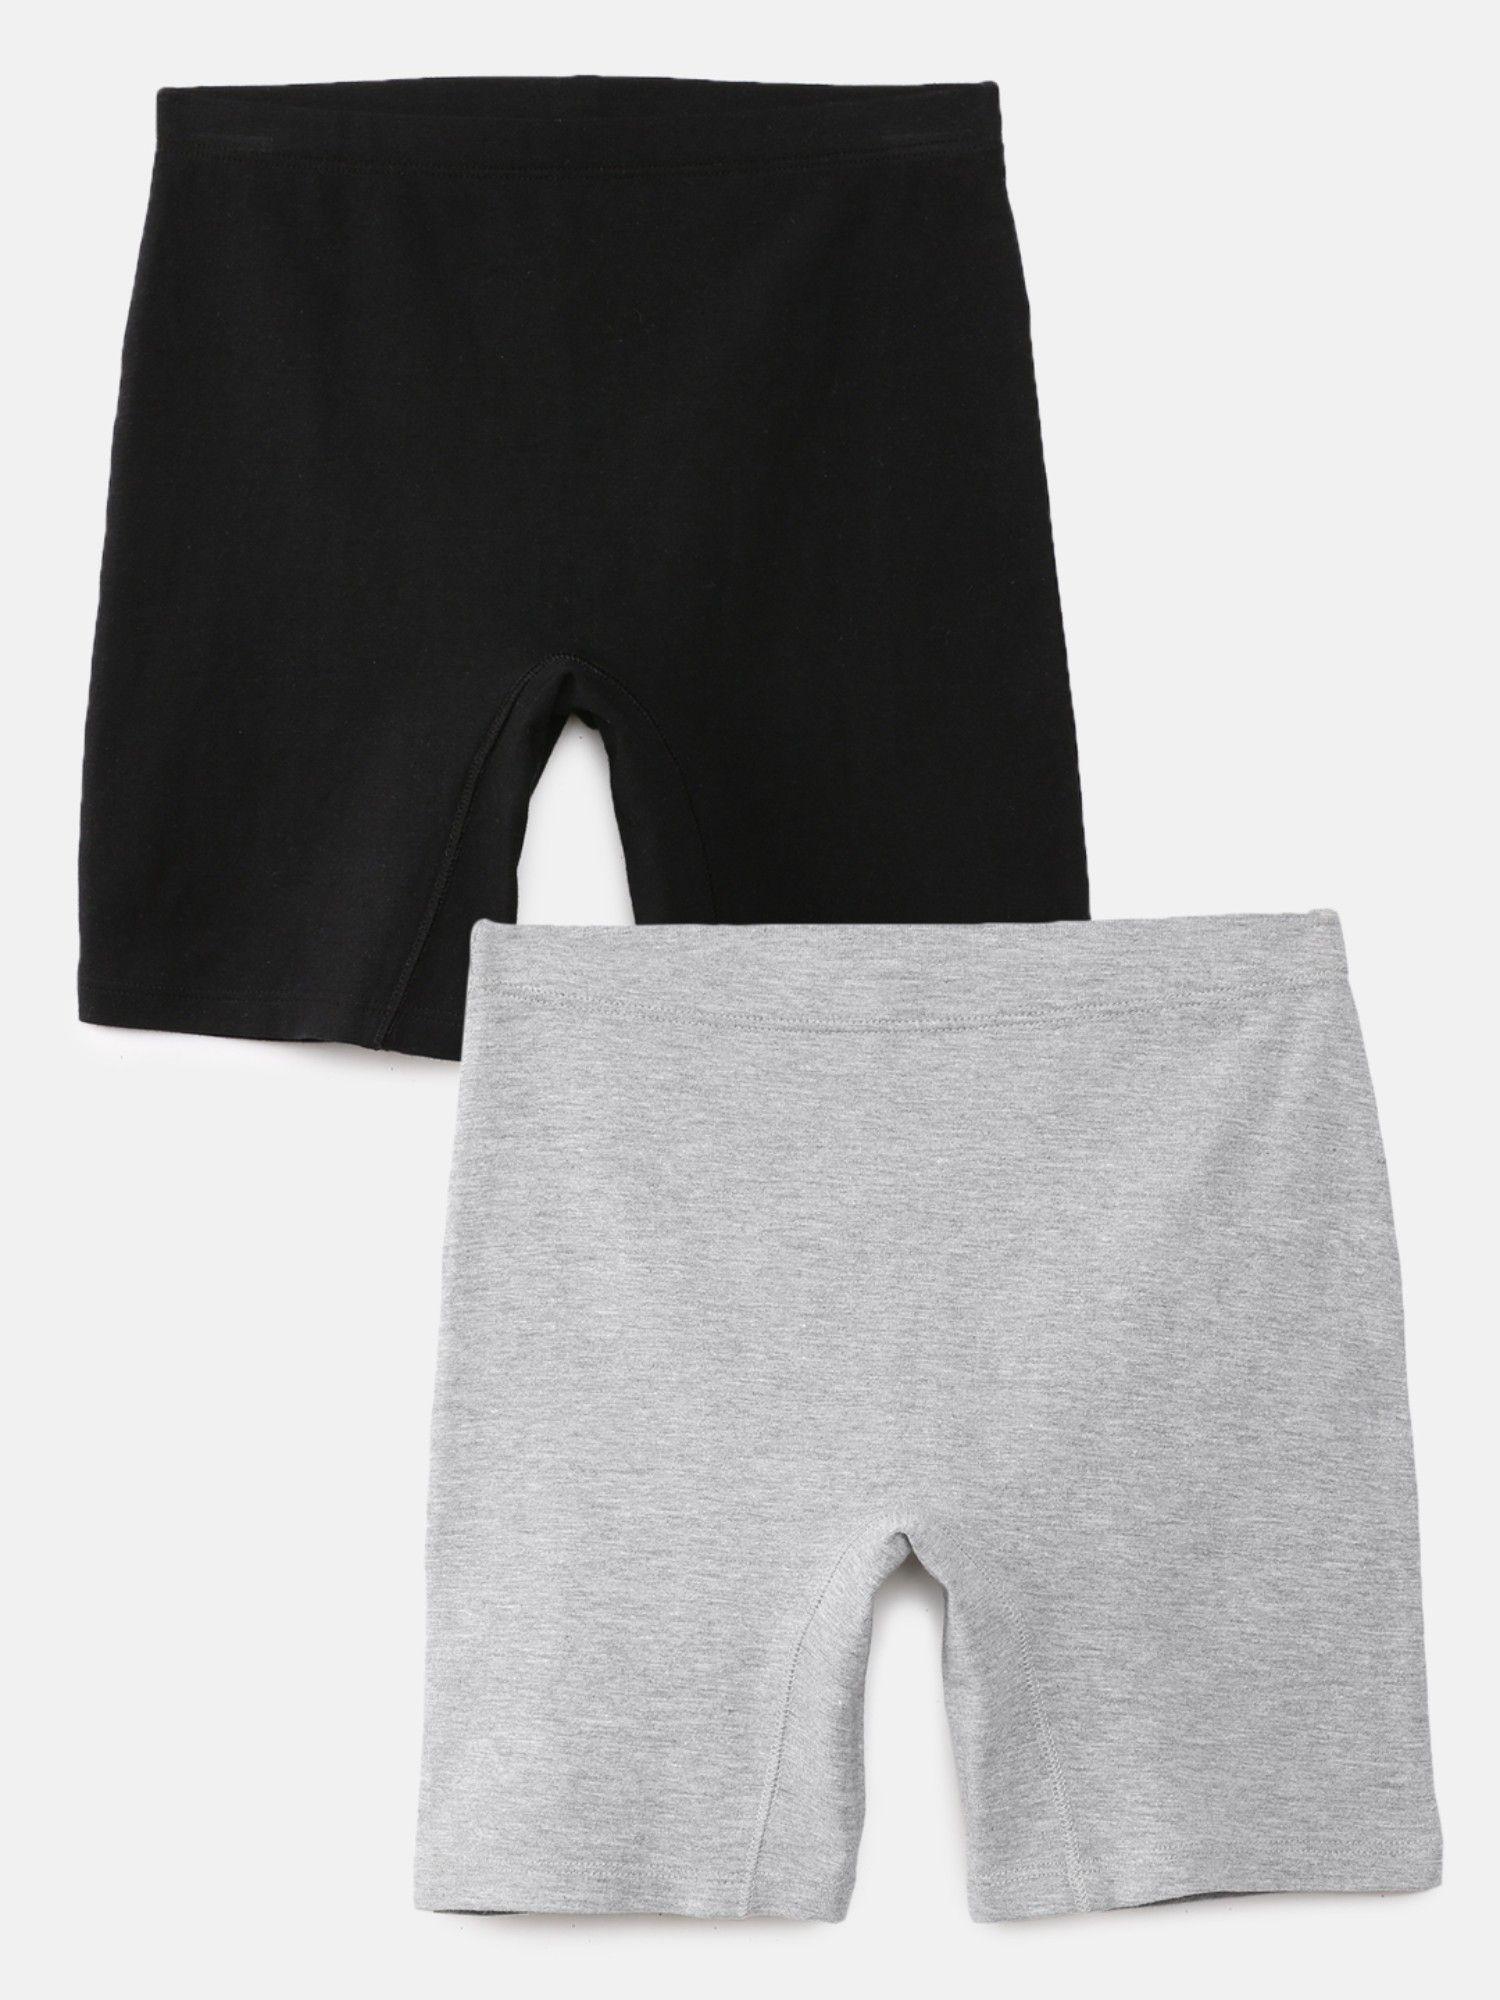 girls inner shorts black & grey (pack of 2)